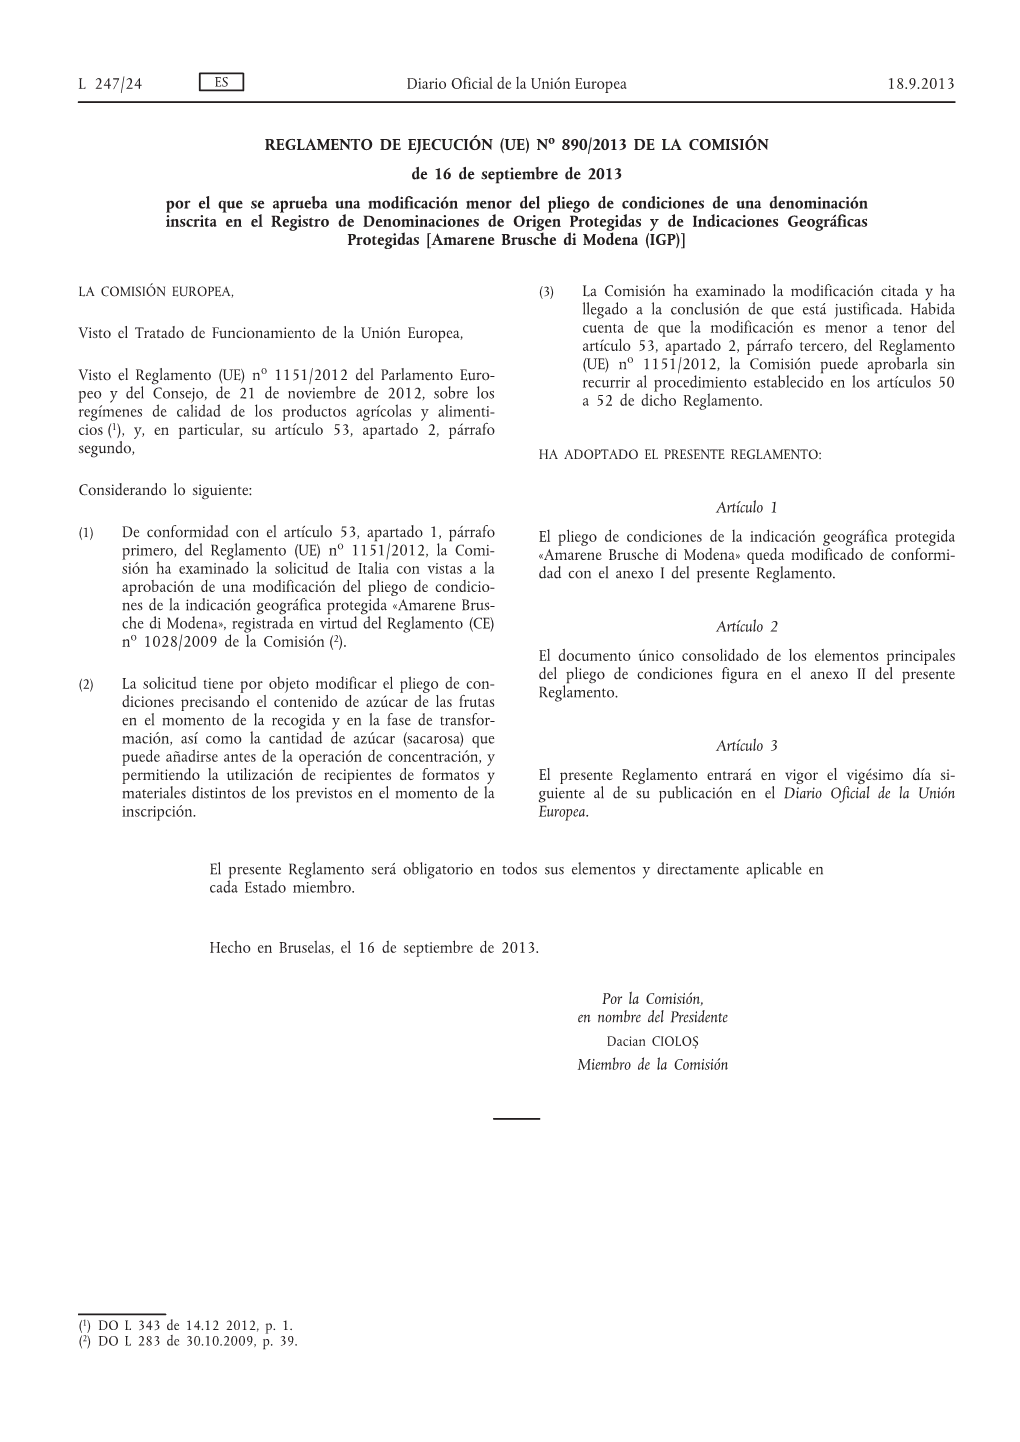 REGLAMENTO DE EJECUCIÓN (UE) No 890/2013 DE LA COMISIÓN